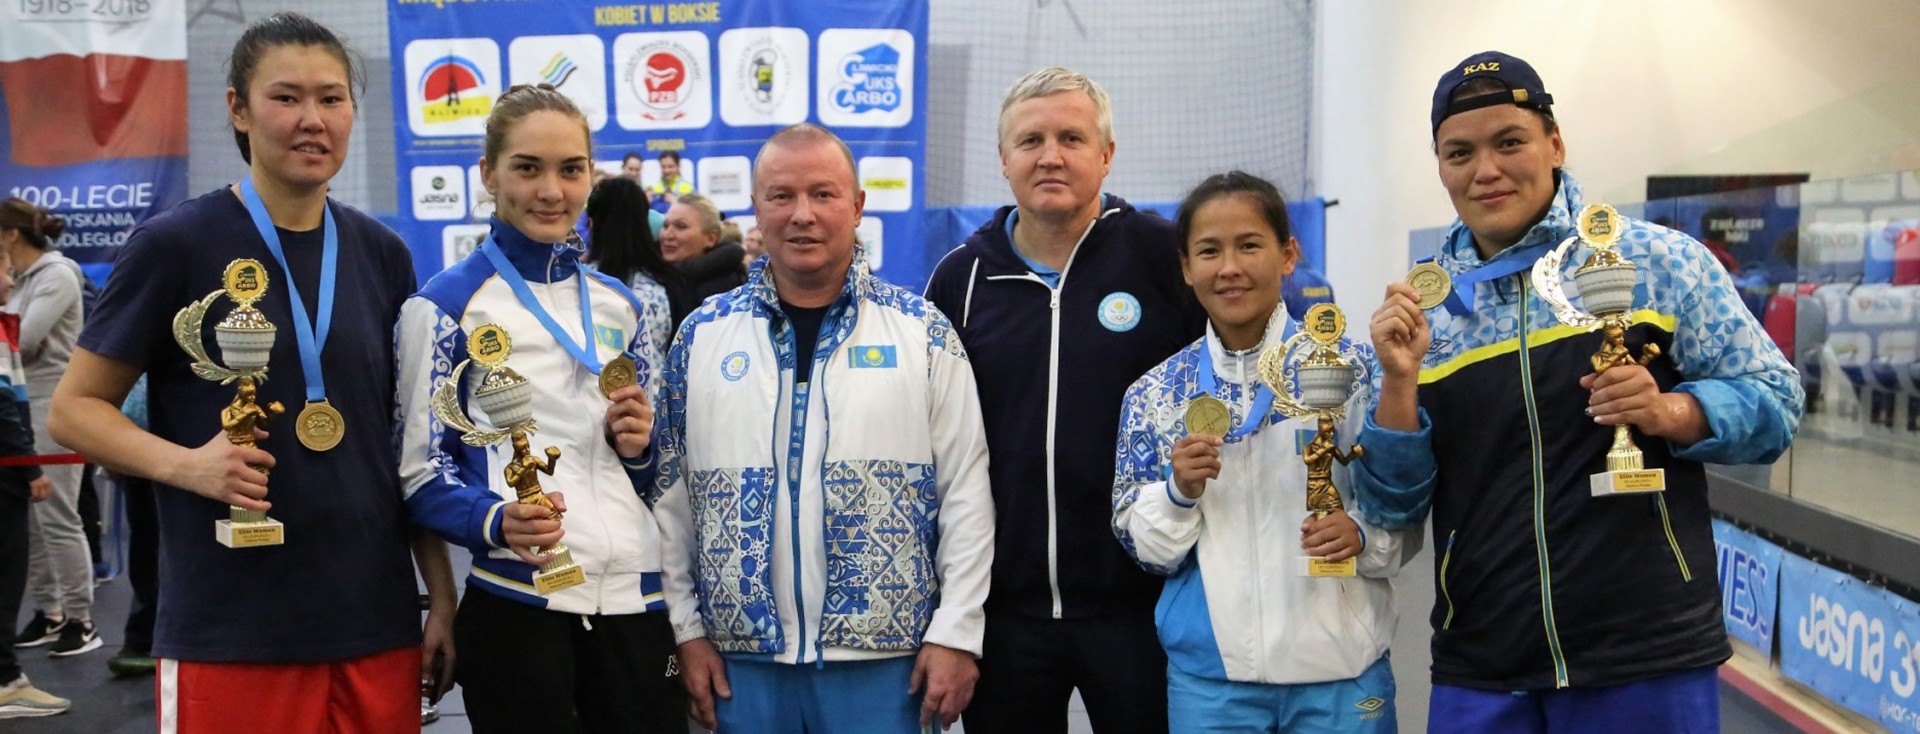 Казахстанские спортсменки забрали четыре золота на международном турнире в Польше 